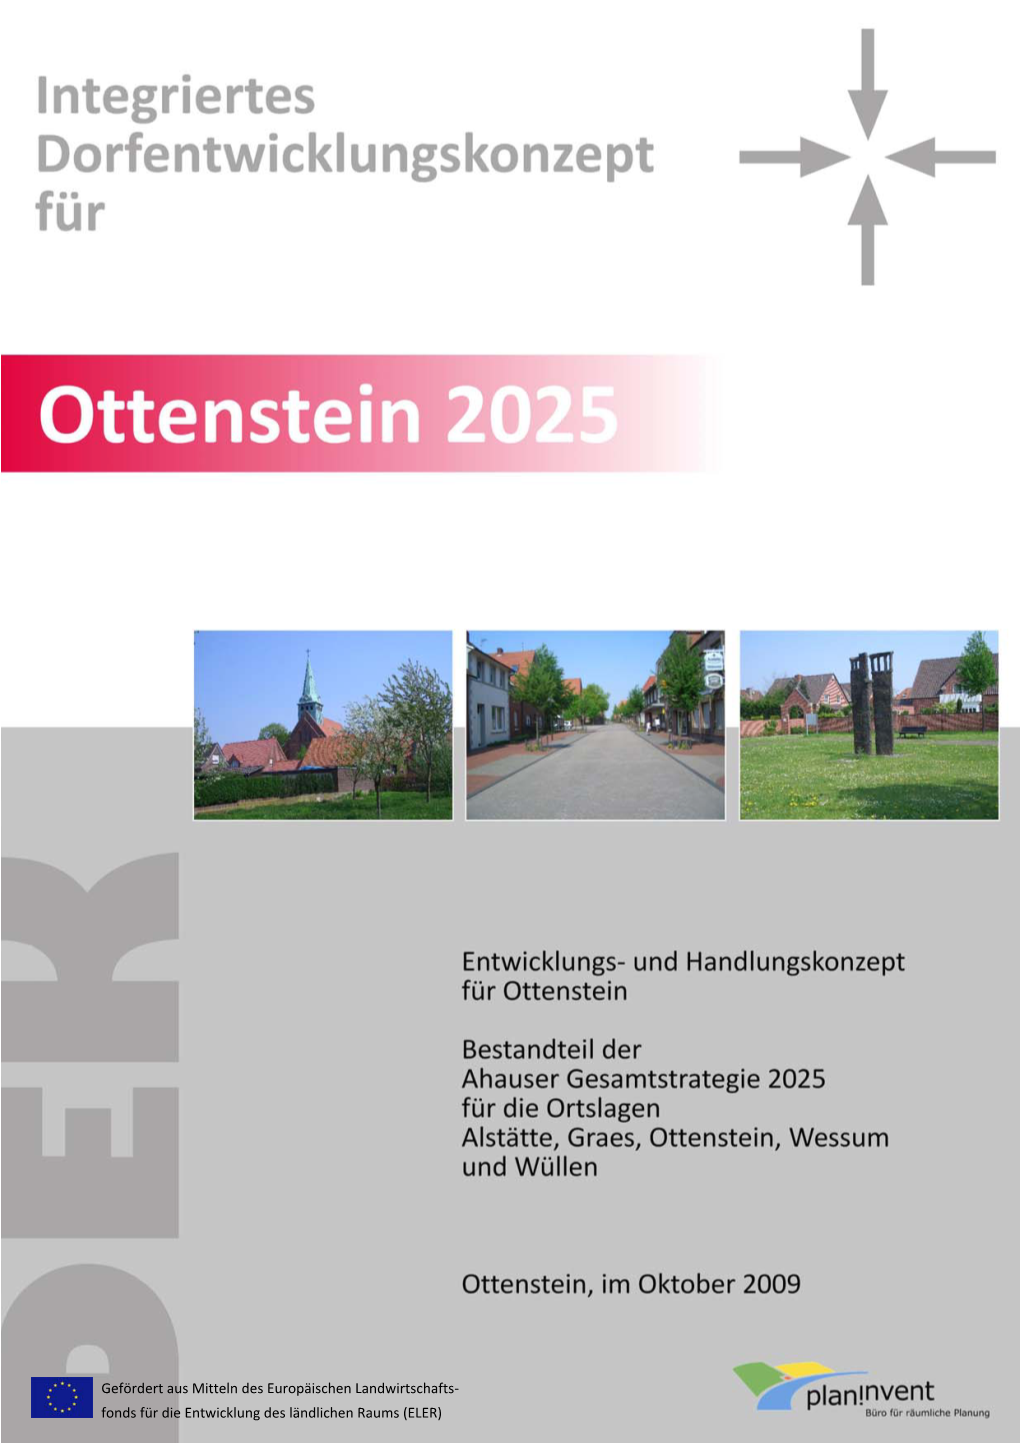 Dorfentwicklungskonzept Ottenstein 2025